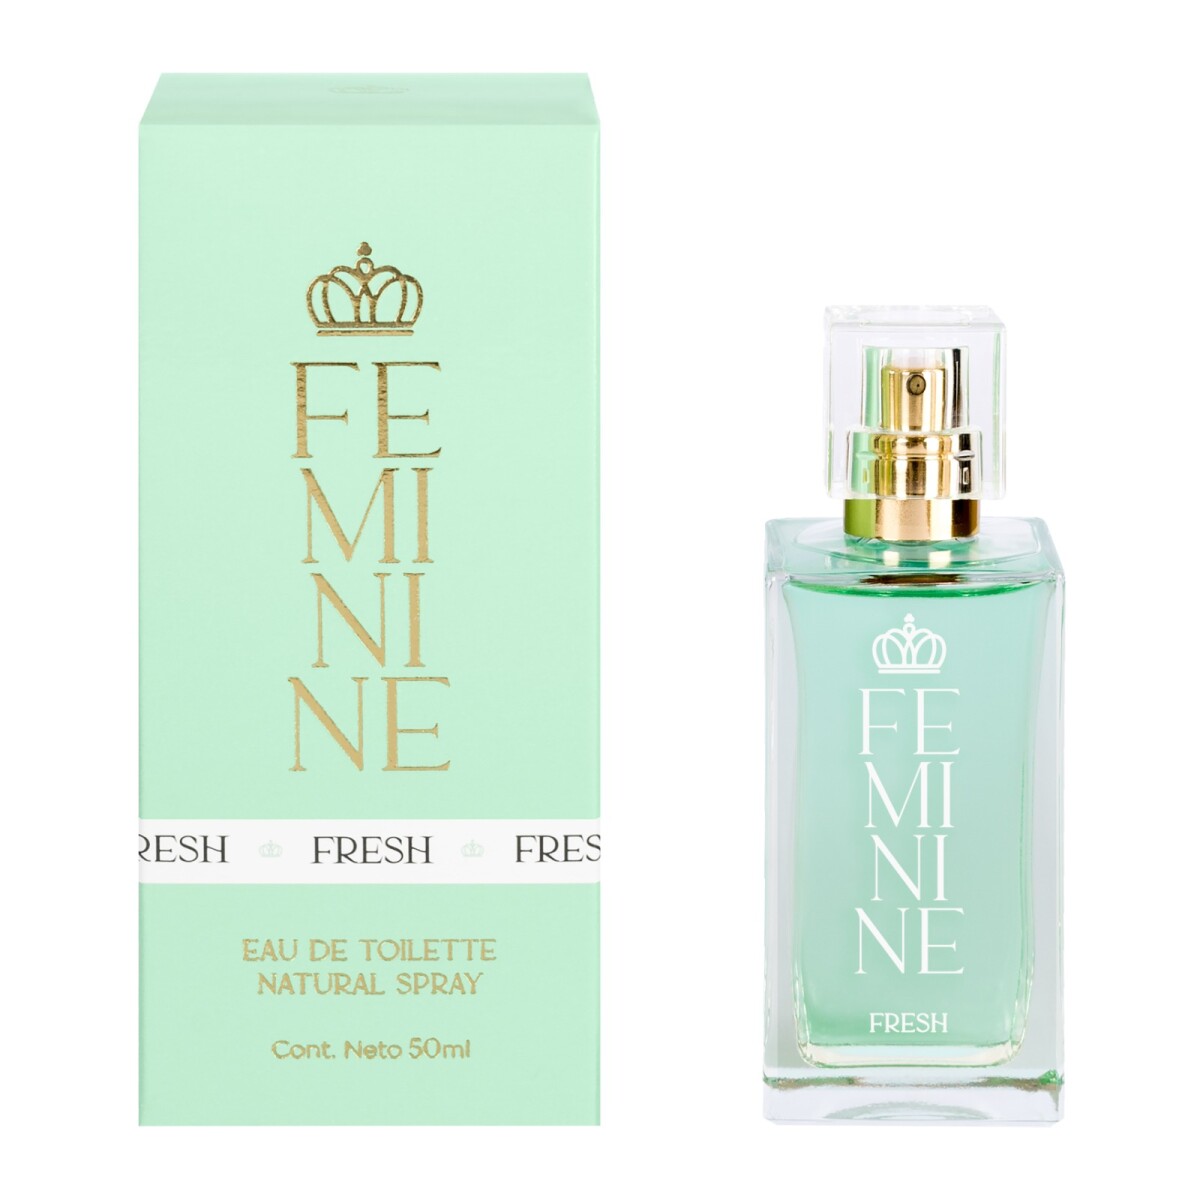 Perfume Feminine Fresh Edt 50 Ml - 001 